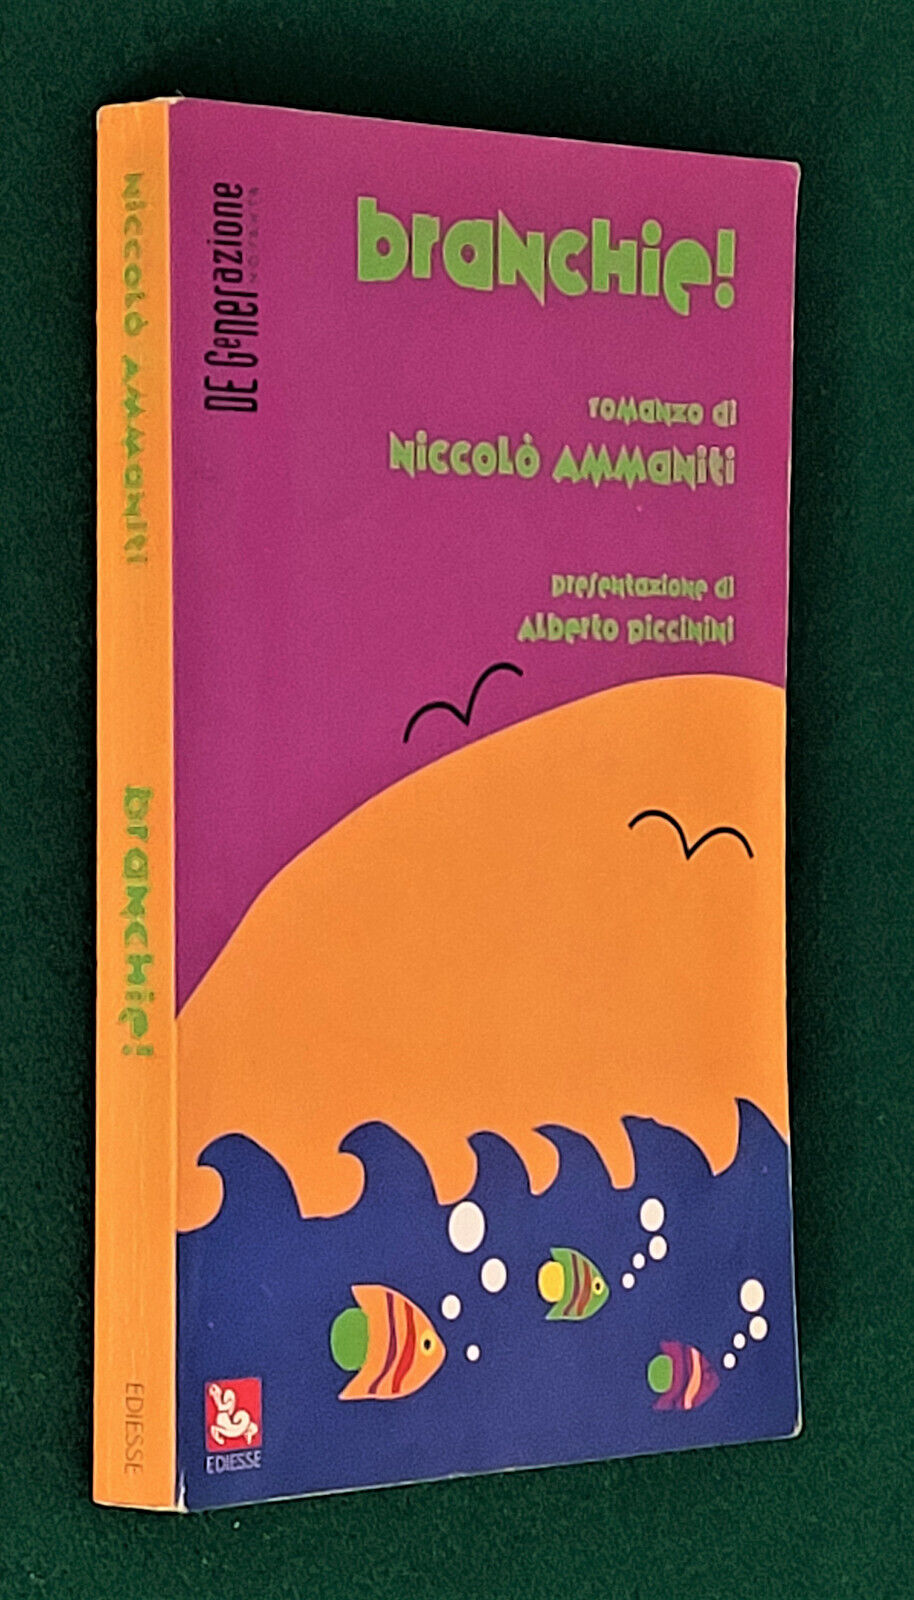 A caccia del primo libro di Niccolò Ammaniti: Branchie (Ediesse, 1994)